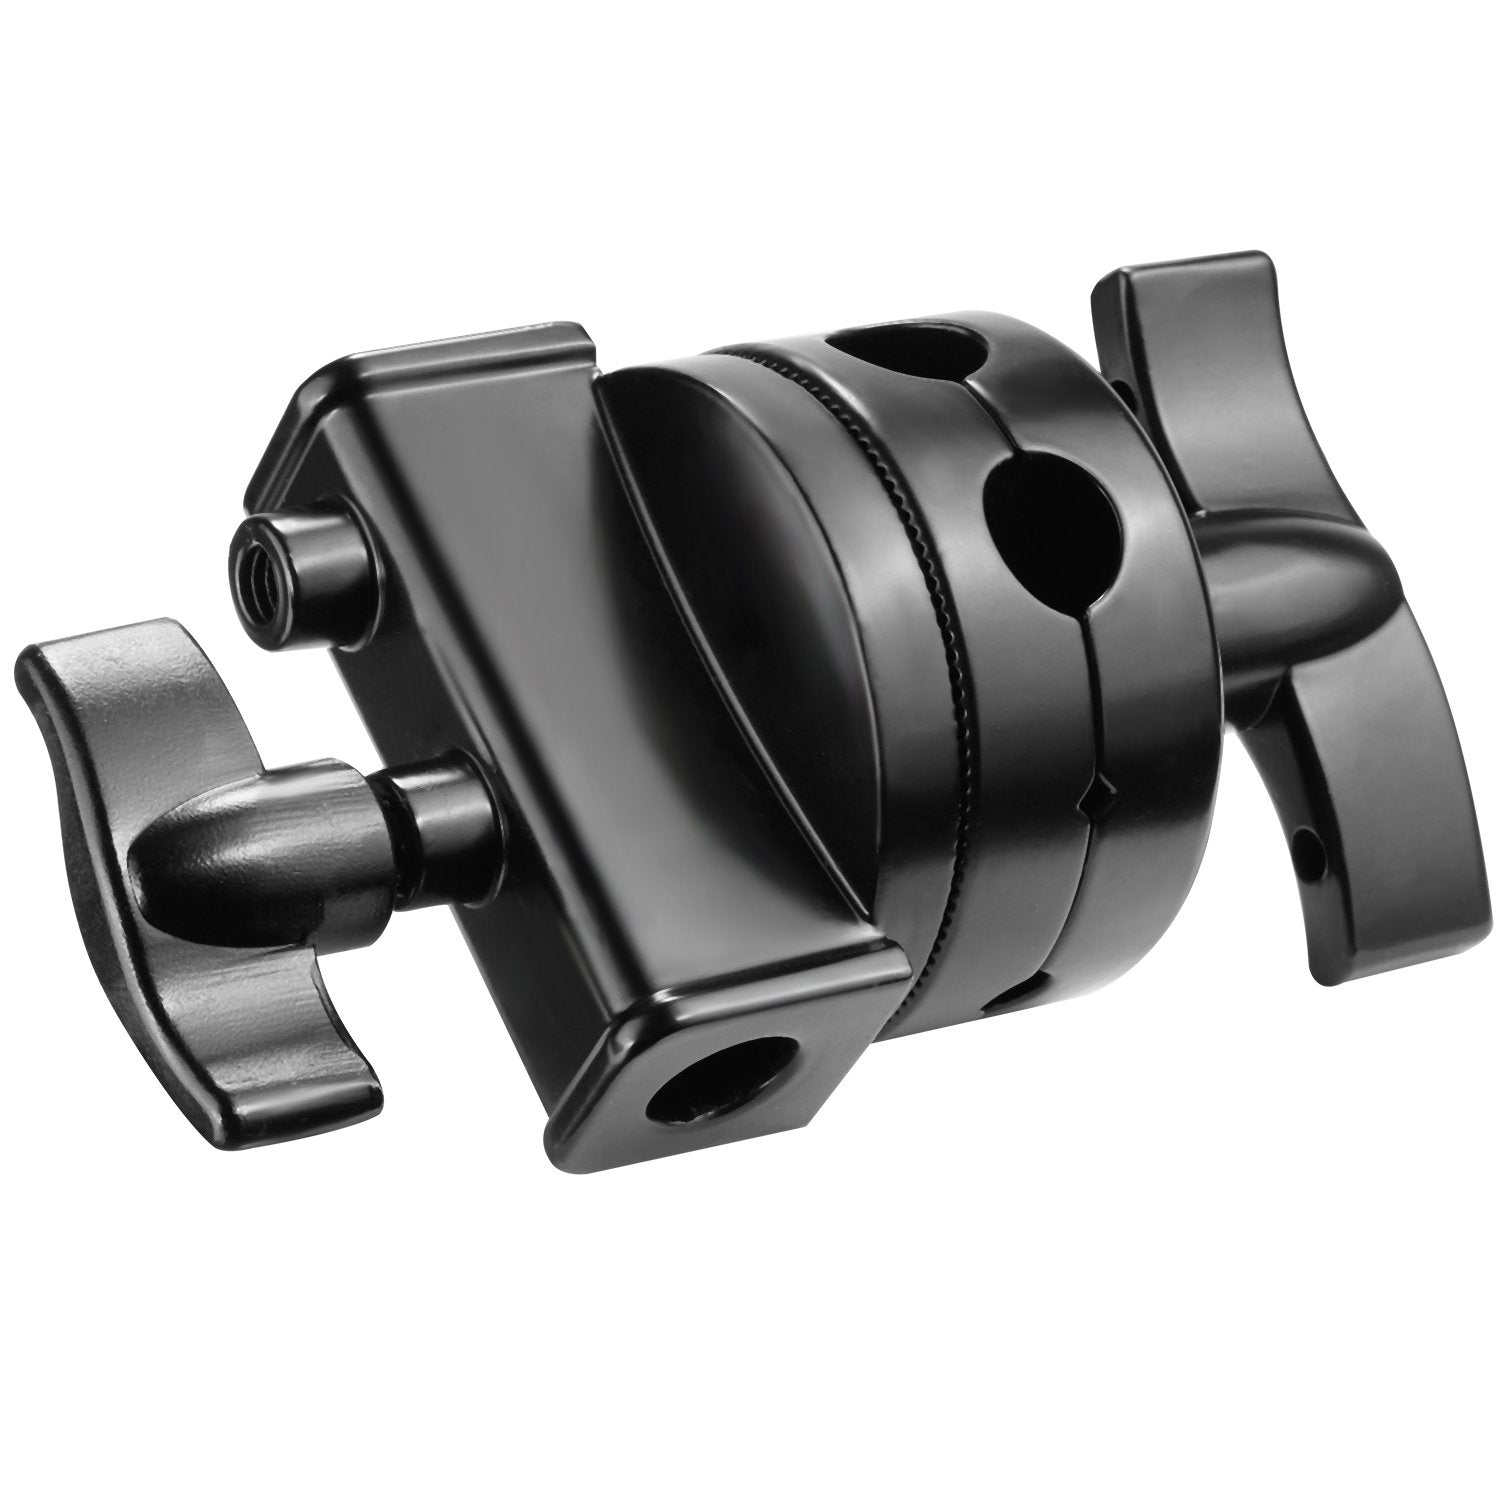 Black Photo Studio C-Stand Grip Arm Adjustable Knuckle Grip/Gaffer Light  Mount